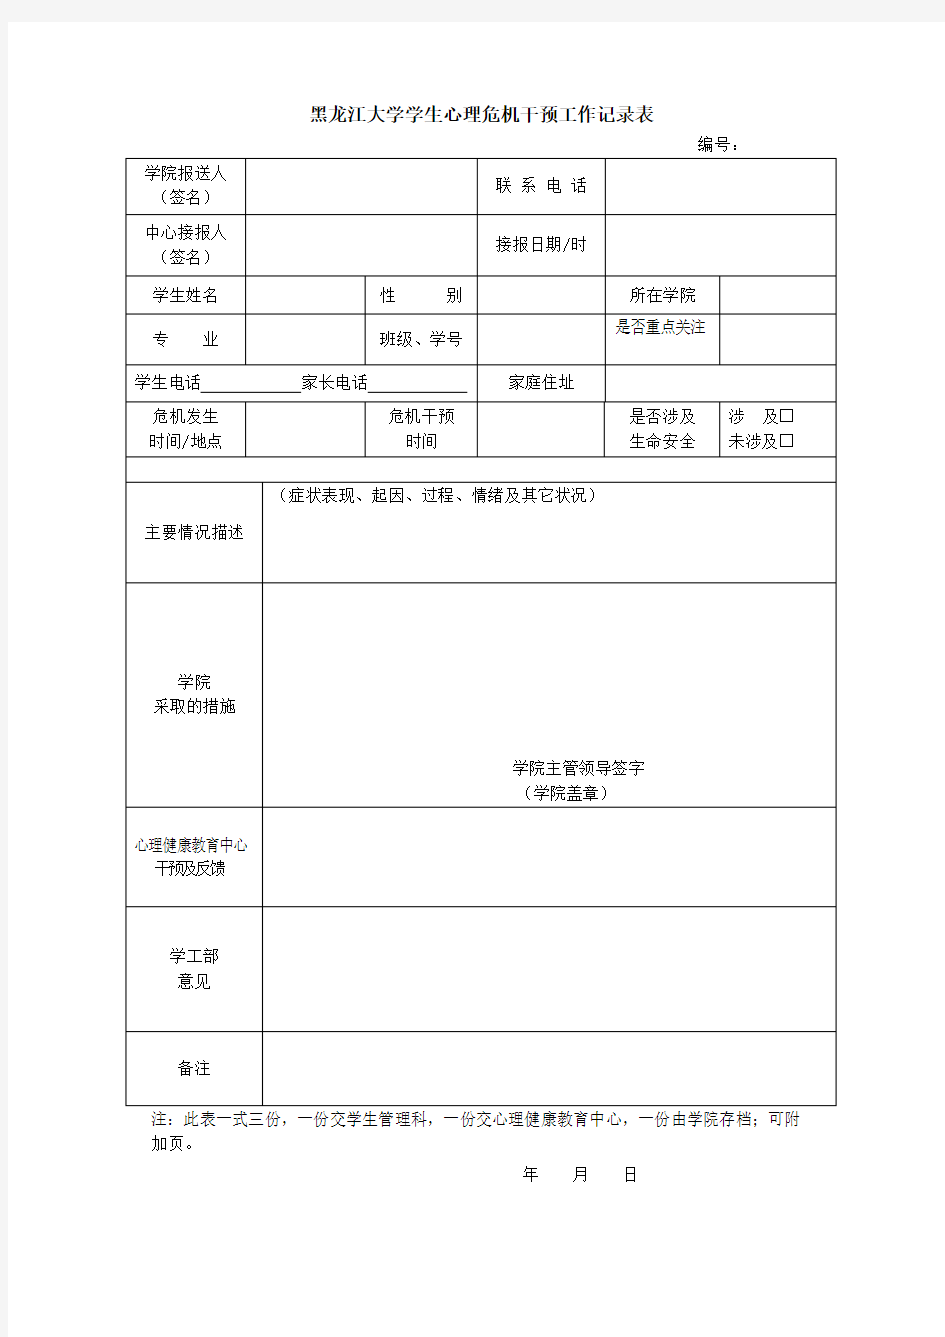 黑龙江大学学生心理危机干预工作记录表